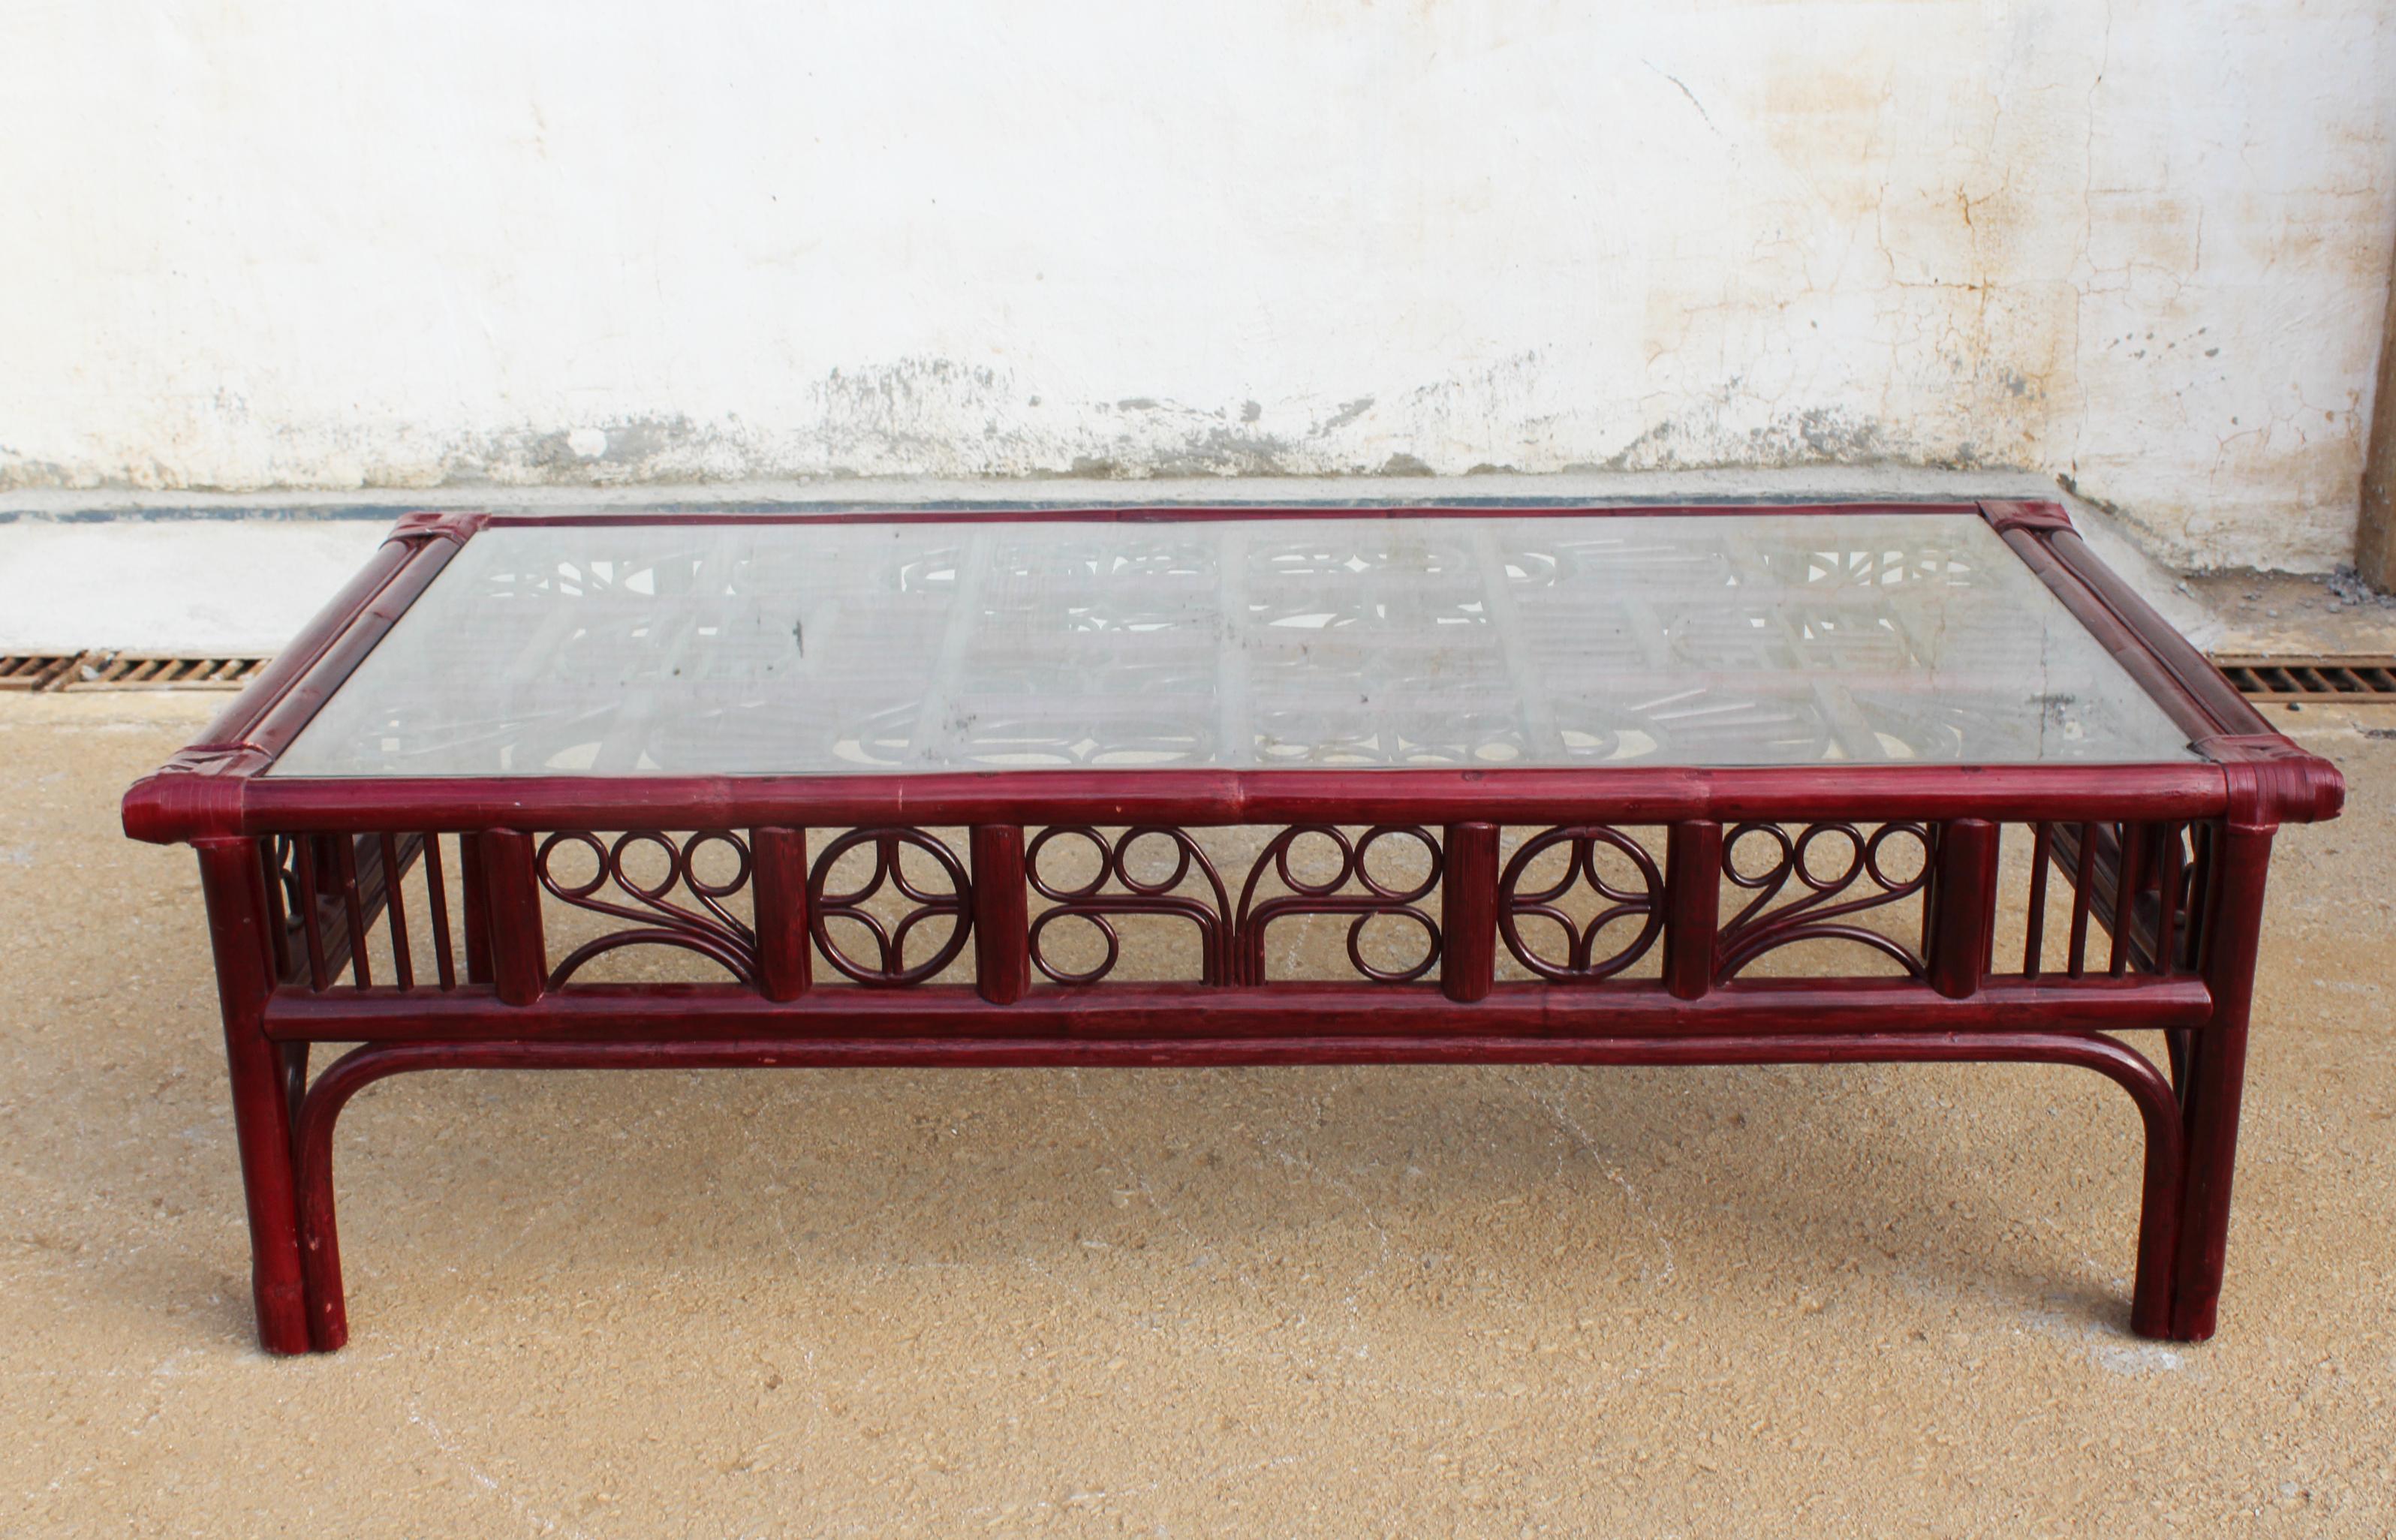 Rechteckiger Couchtisch aus rotem Holz aus den 1970er Jahren, der Bambusrohr imitiert, mit Ledereinfassungen und Glasplatte, verziert mit geometrischen orientalischen Motiven.
  